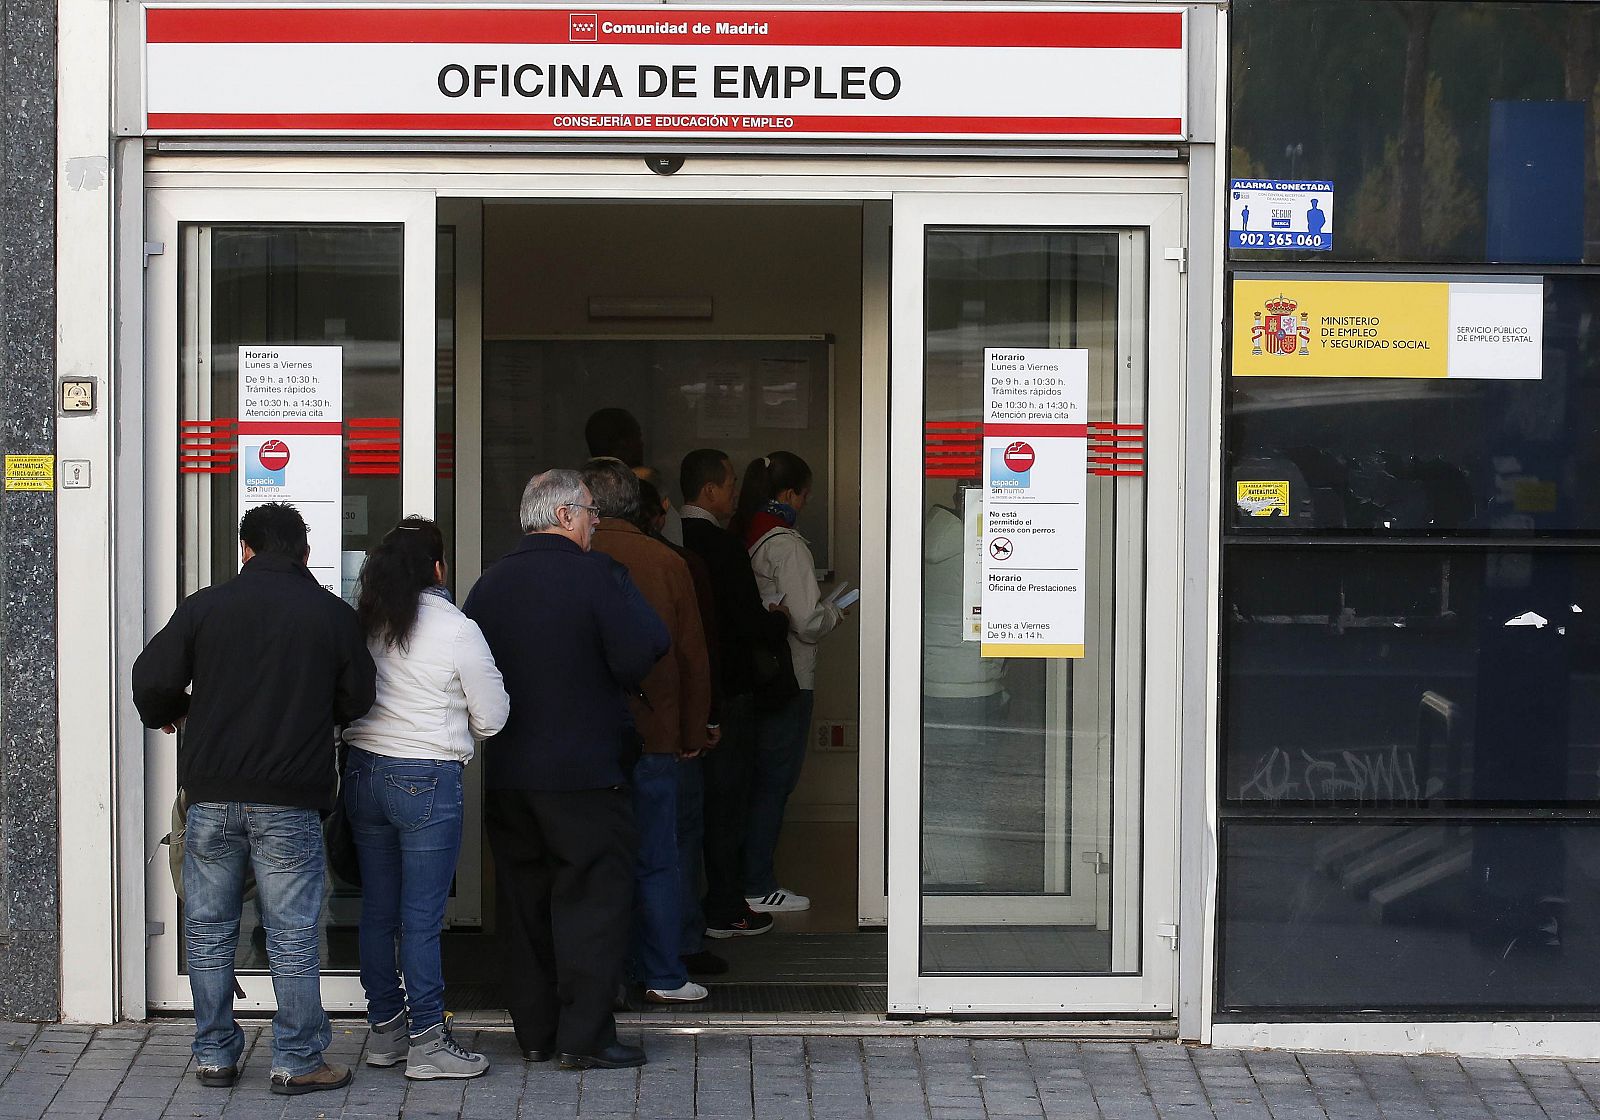 Varias personas hacen cola a la entrada de una oficina de empleo en Madrid